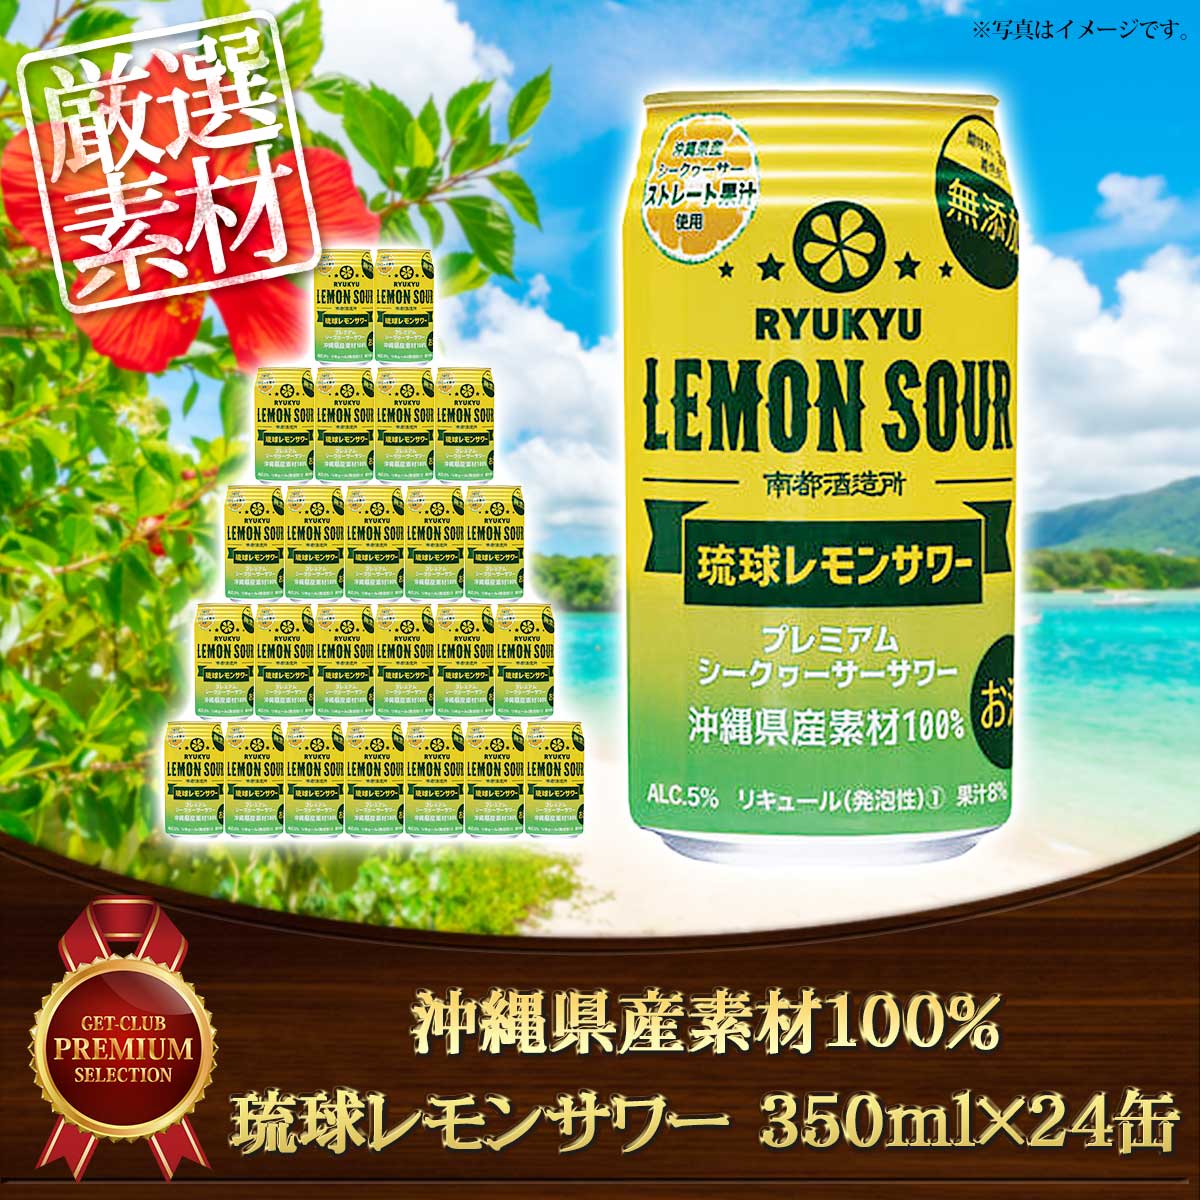 沖縄県産素材100% 琉球レモンサワー 350ml×24缶